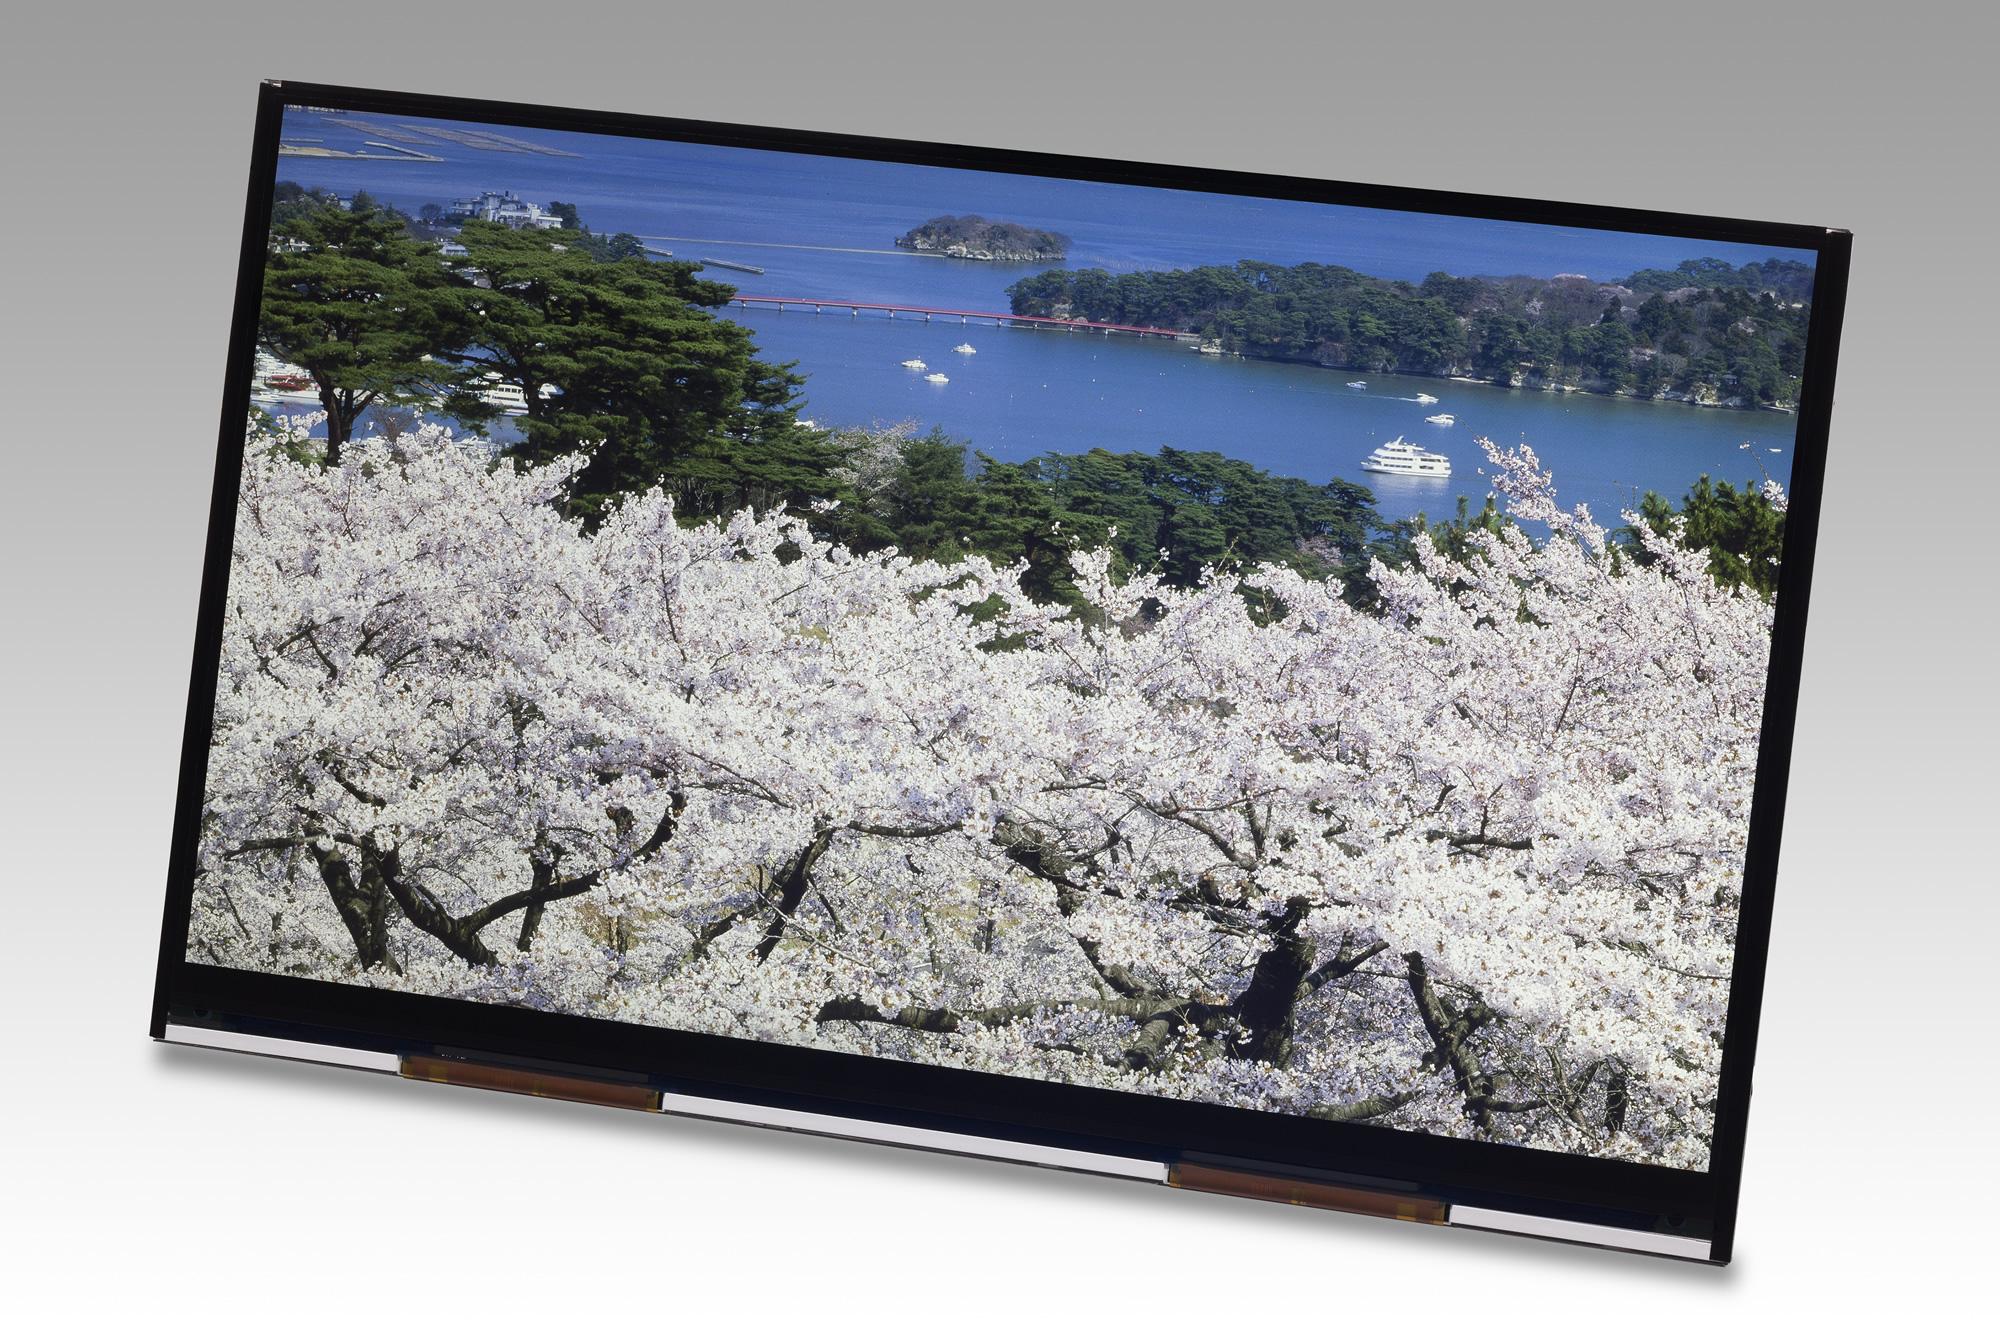 Konkurrenten Japan Display har begynt å levere 10,1-tommers 4K-LCD-paneler til nettbrett.Foto: Japan Display